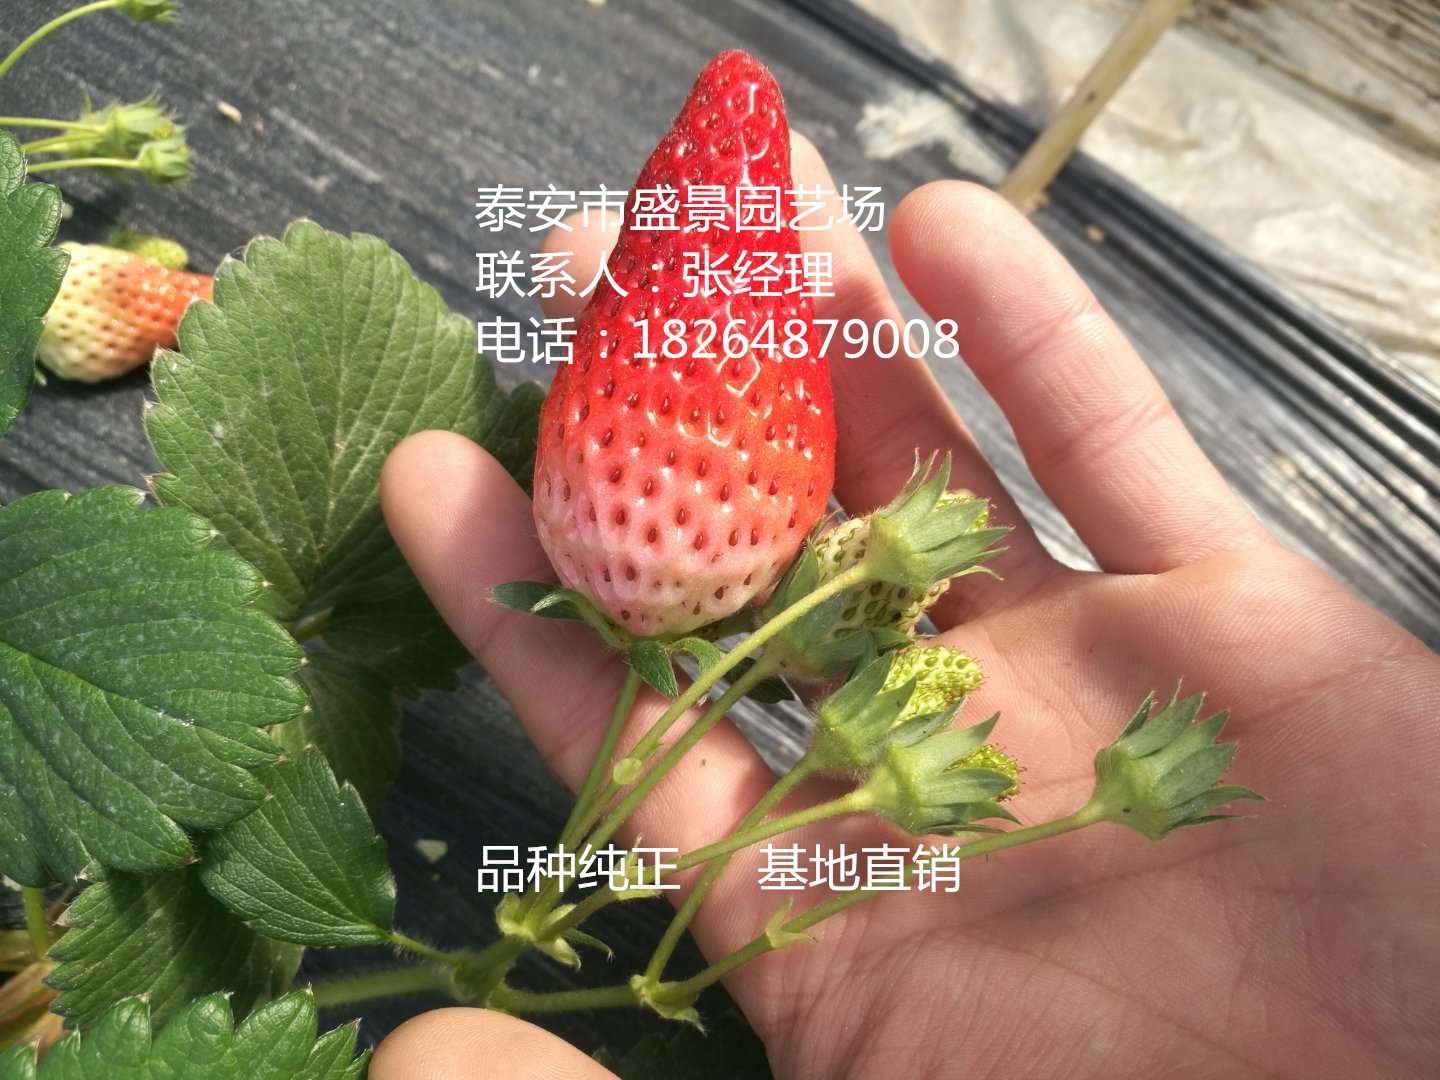 十堰市红颜草莓苗价格